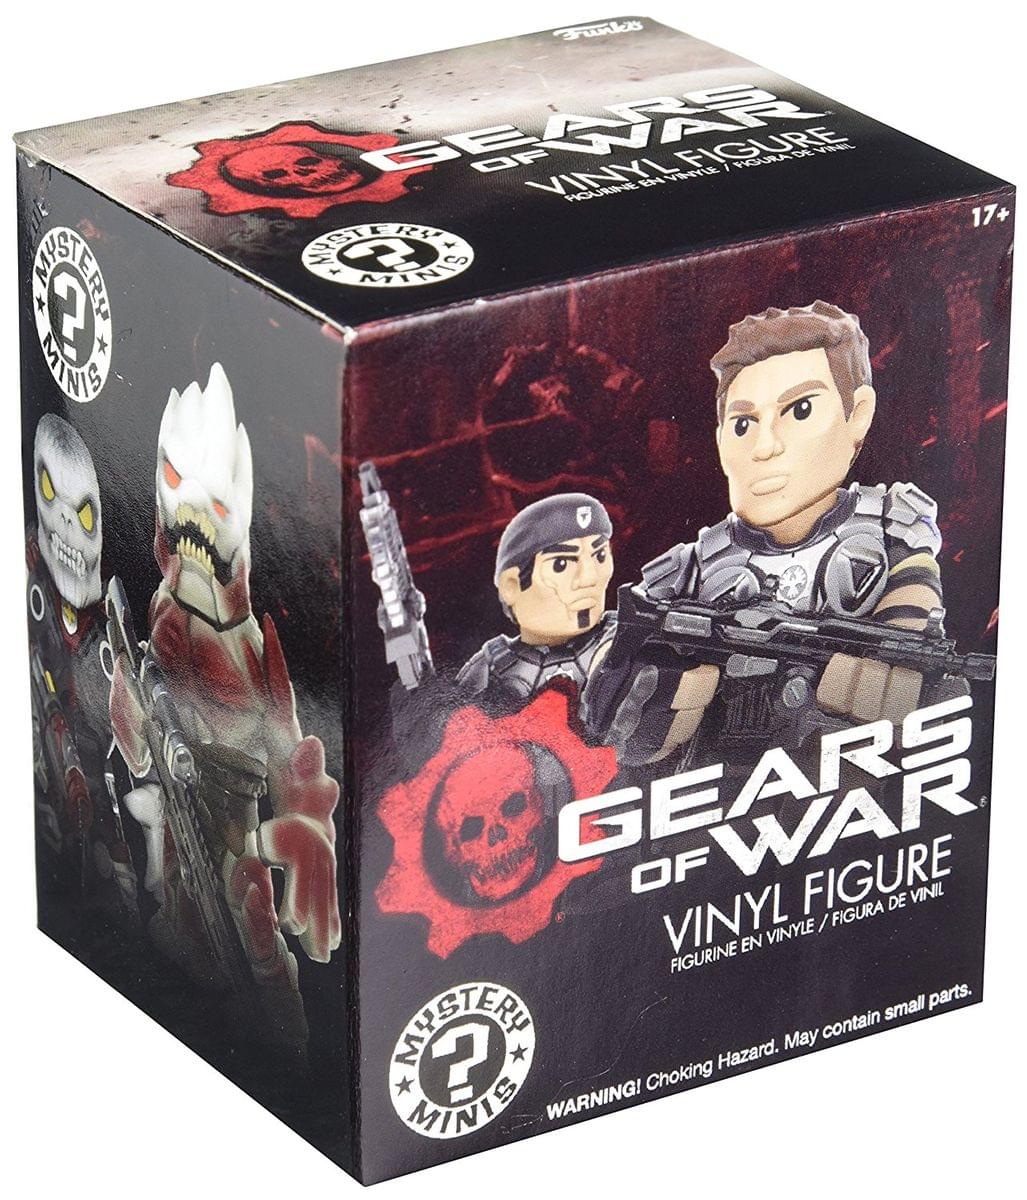 Gears of War Funko Blind Packaging Mini Figure